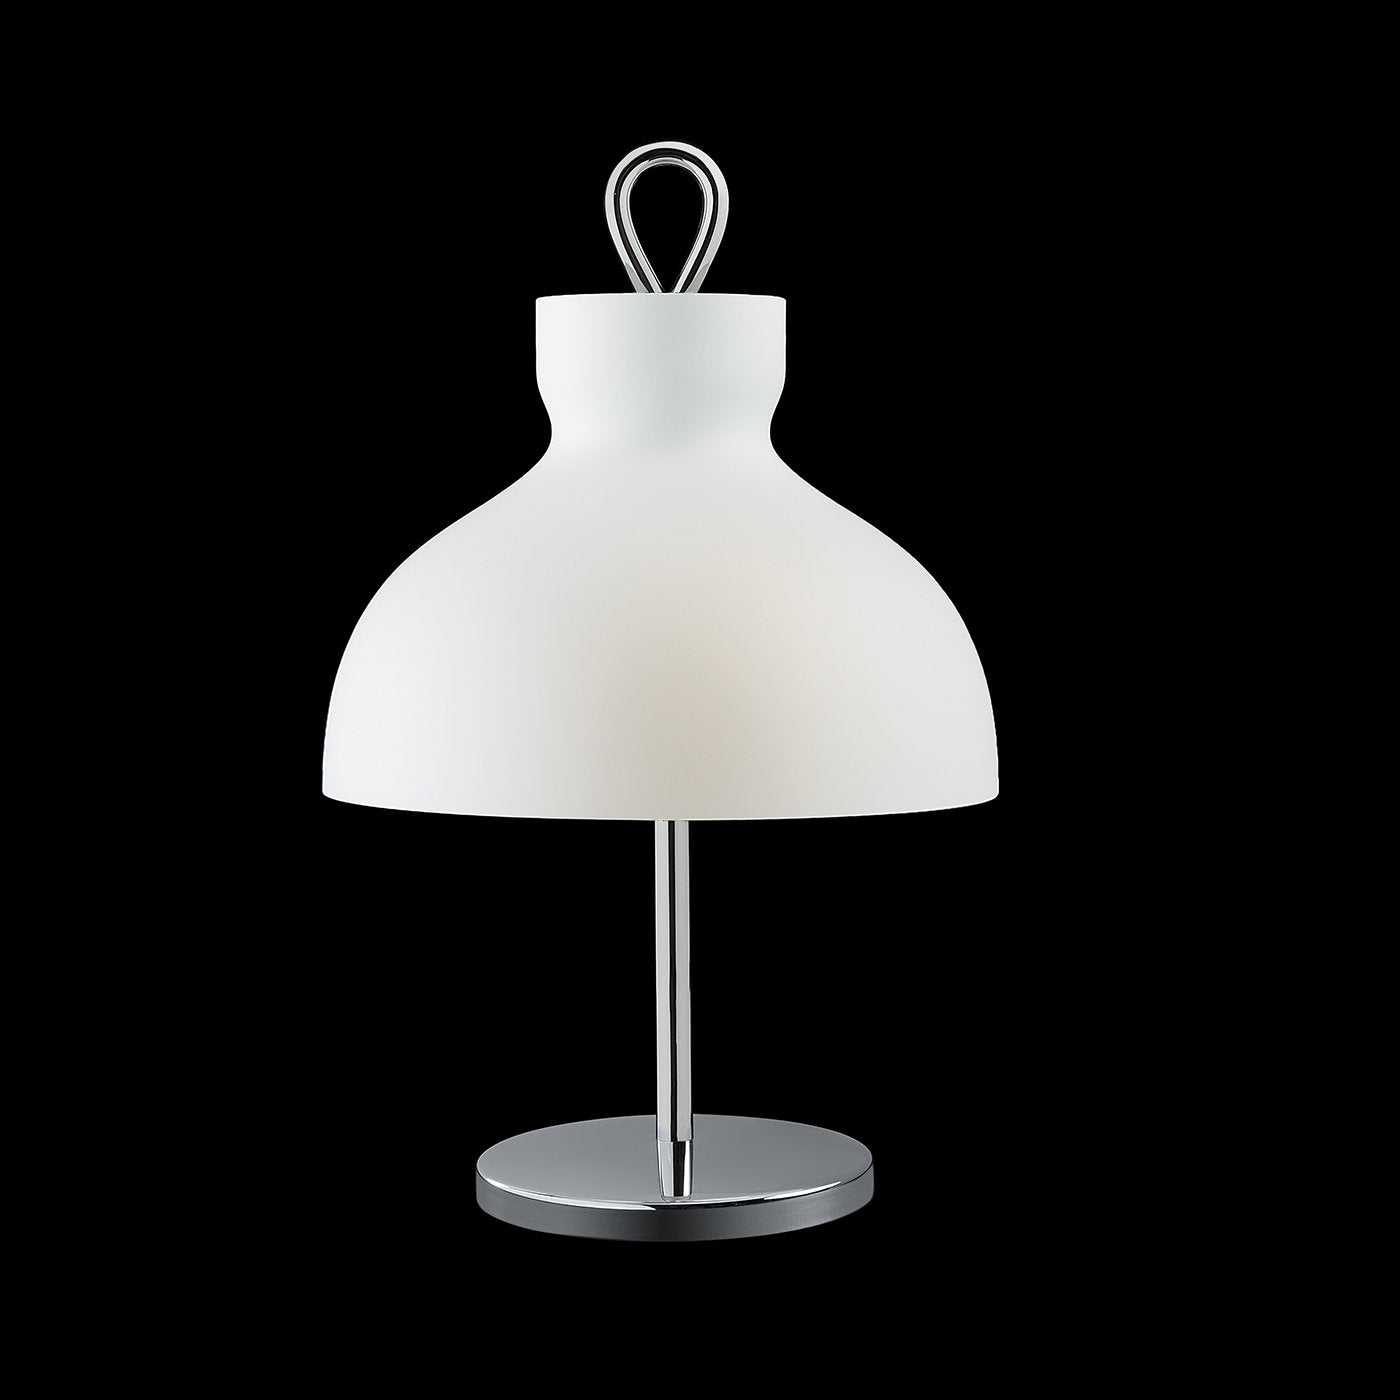 Arenzano Bassa Chrome Table Lamp by Ignazio Gardella - Alternative view 2